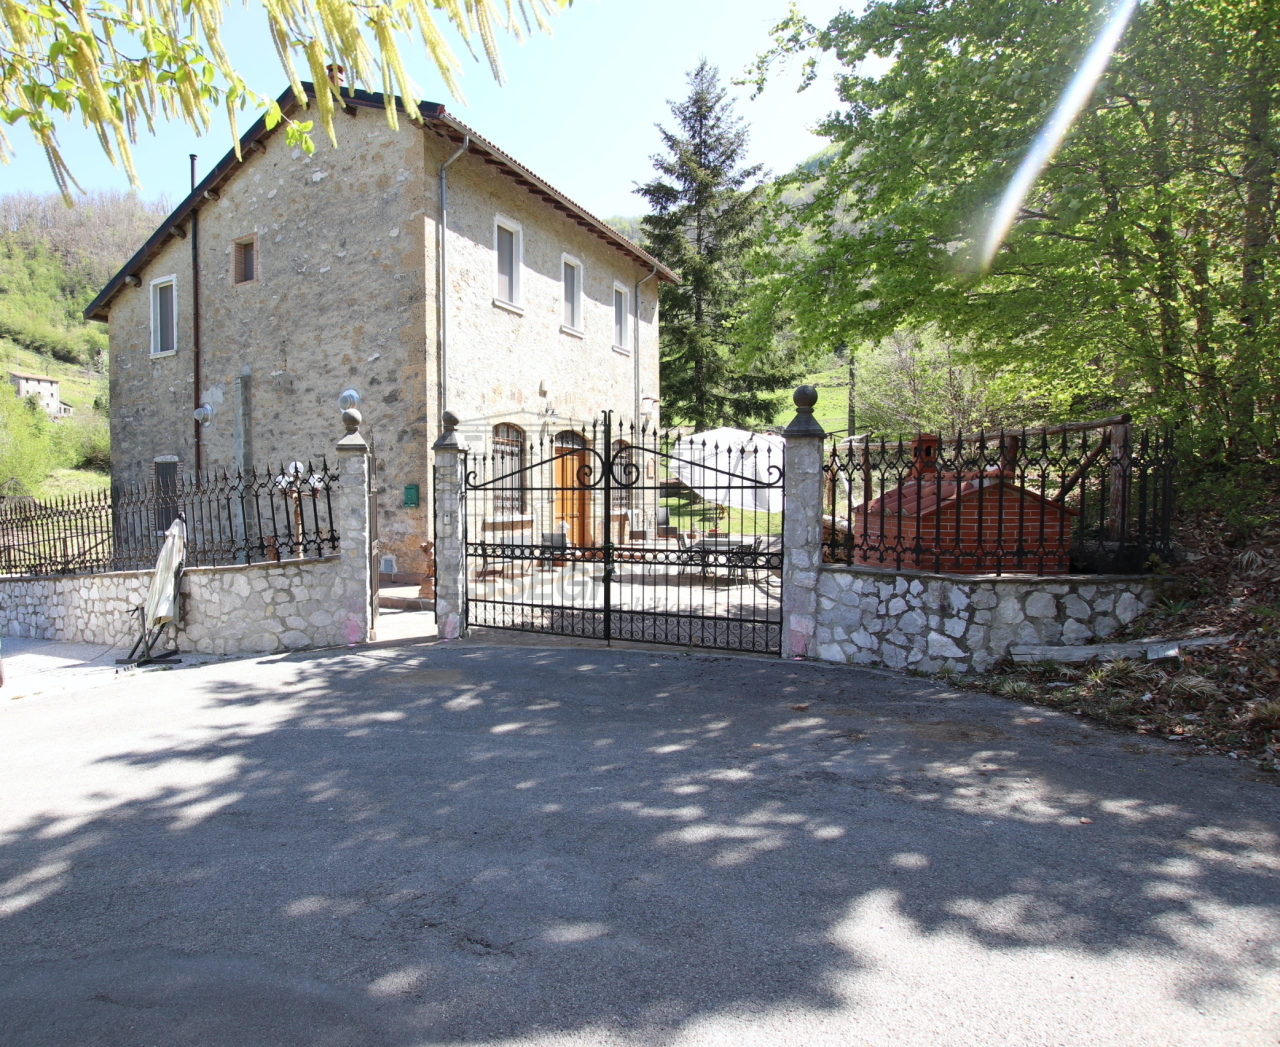 Rustico / Casale in vendita a Molazzana, 8 locali, prezzo € 250.000 | PortaleAgenzieImmobiliari.it